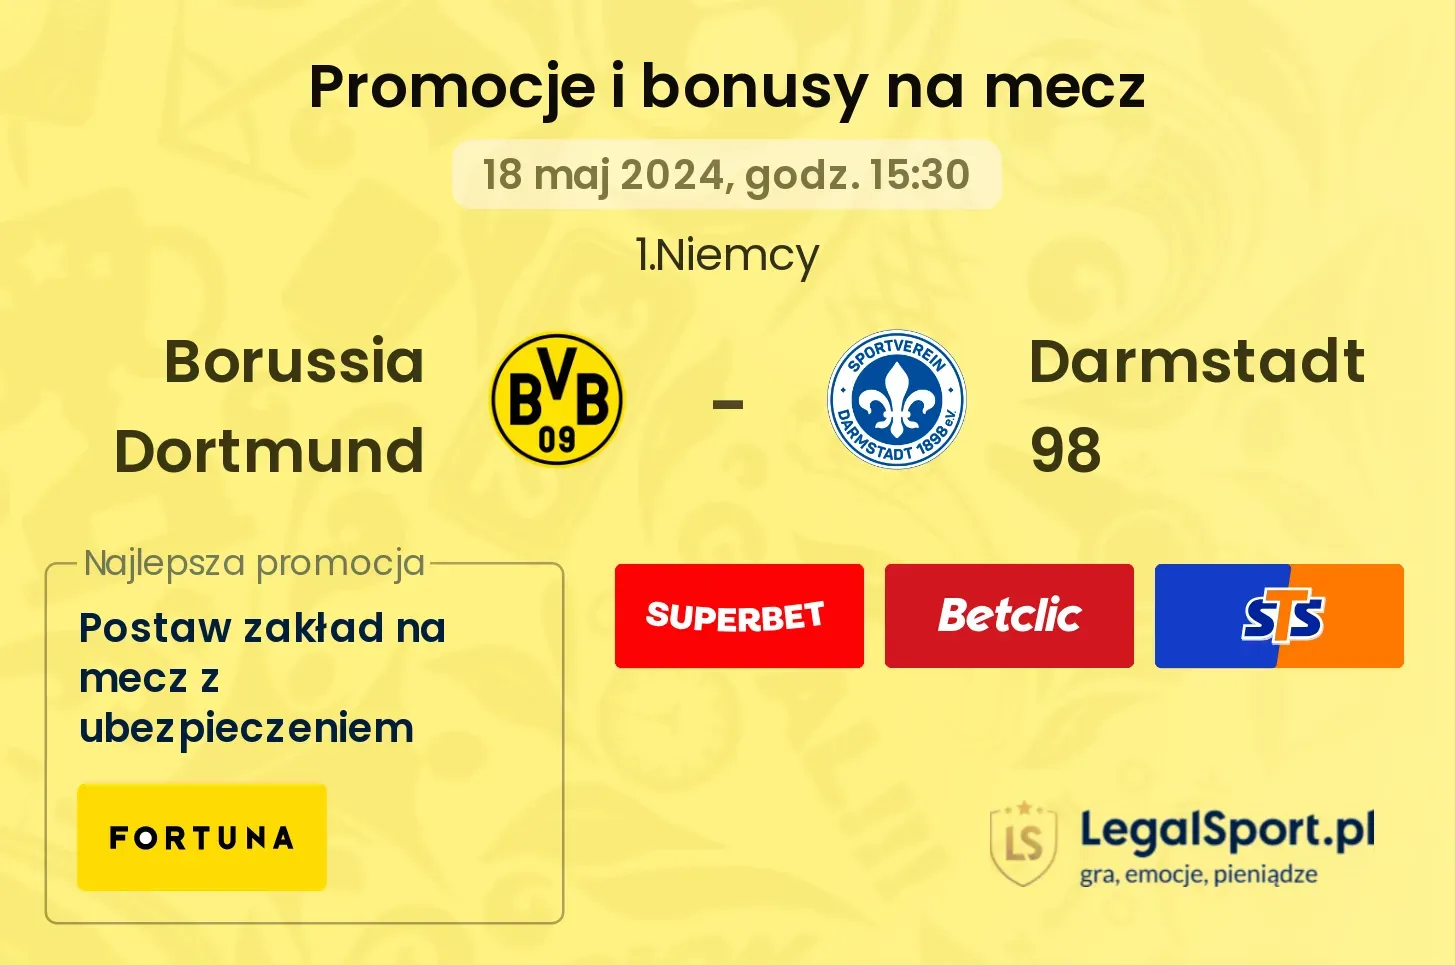 Borussia Dortmund - Darmstadt 98 bonusy i promocje (18.05, 15:30)